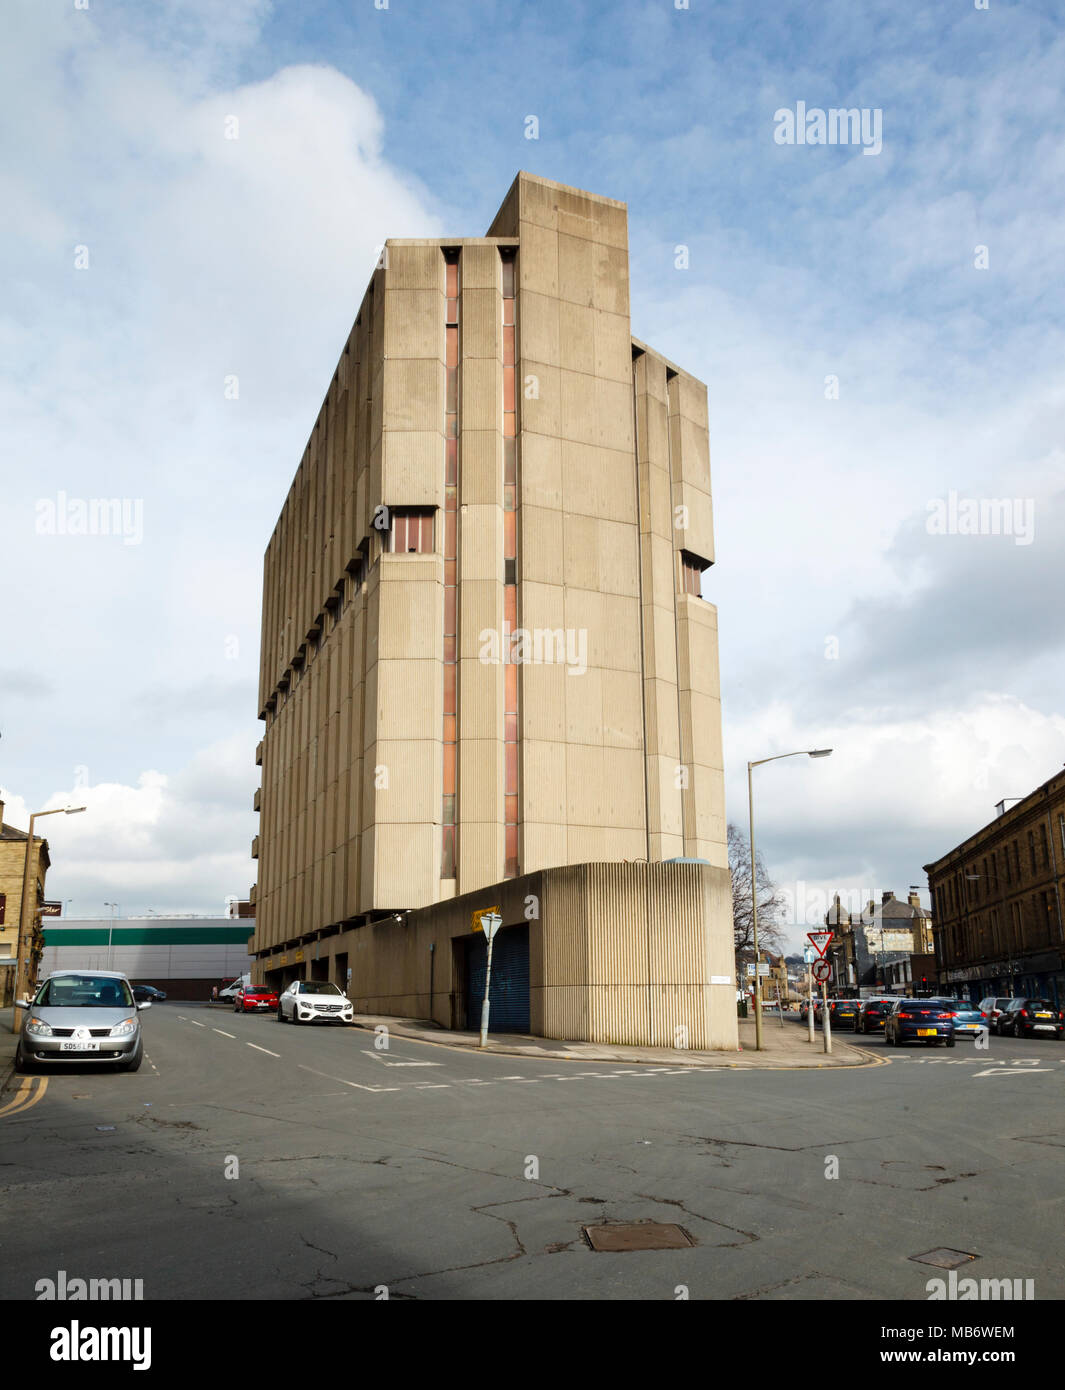 Le West Yorkshire Building Society immeuble de bureaux est restée vide et inutilisé depuis des décennies dans le centre-ville de Bradford, West Yorkshire Banque D'Images